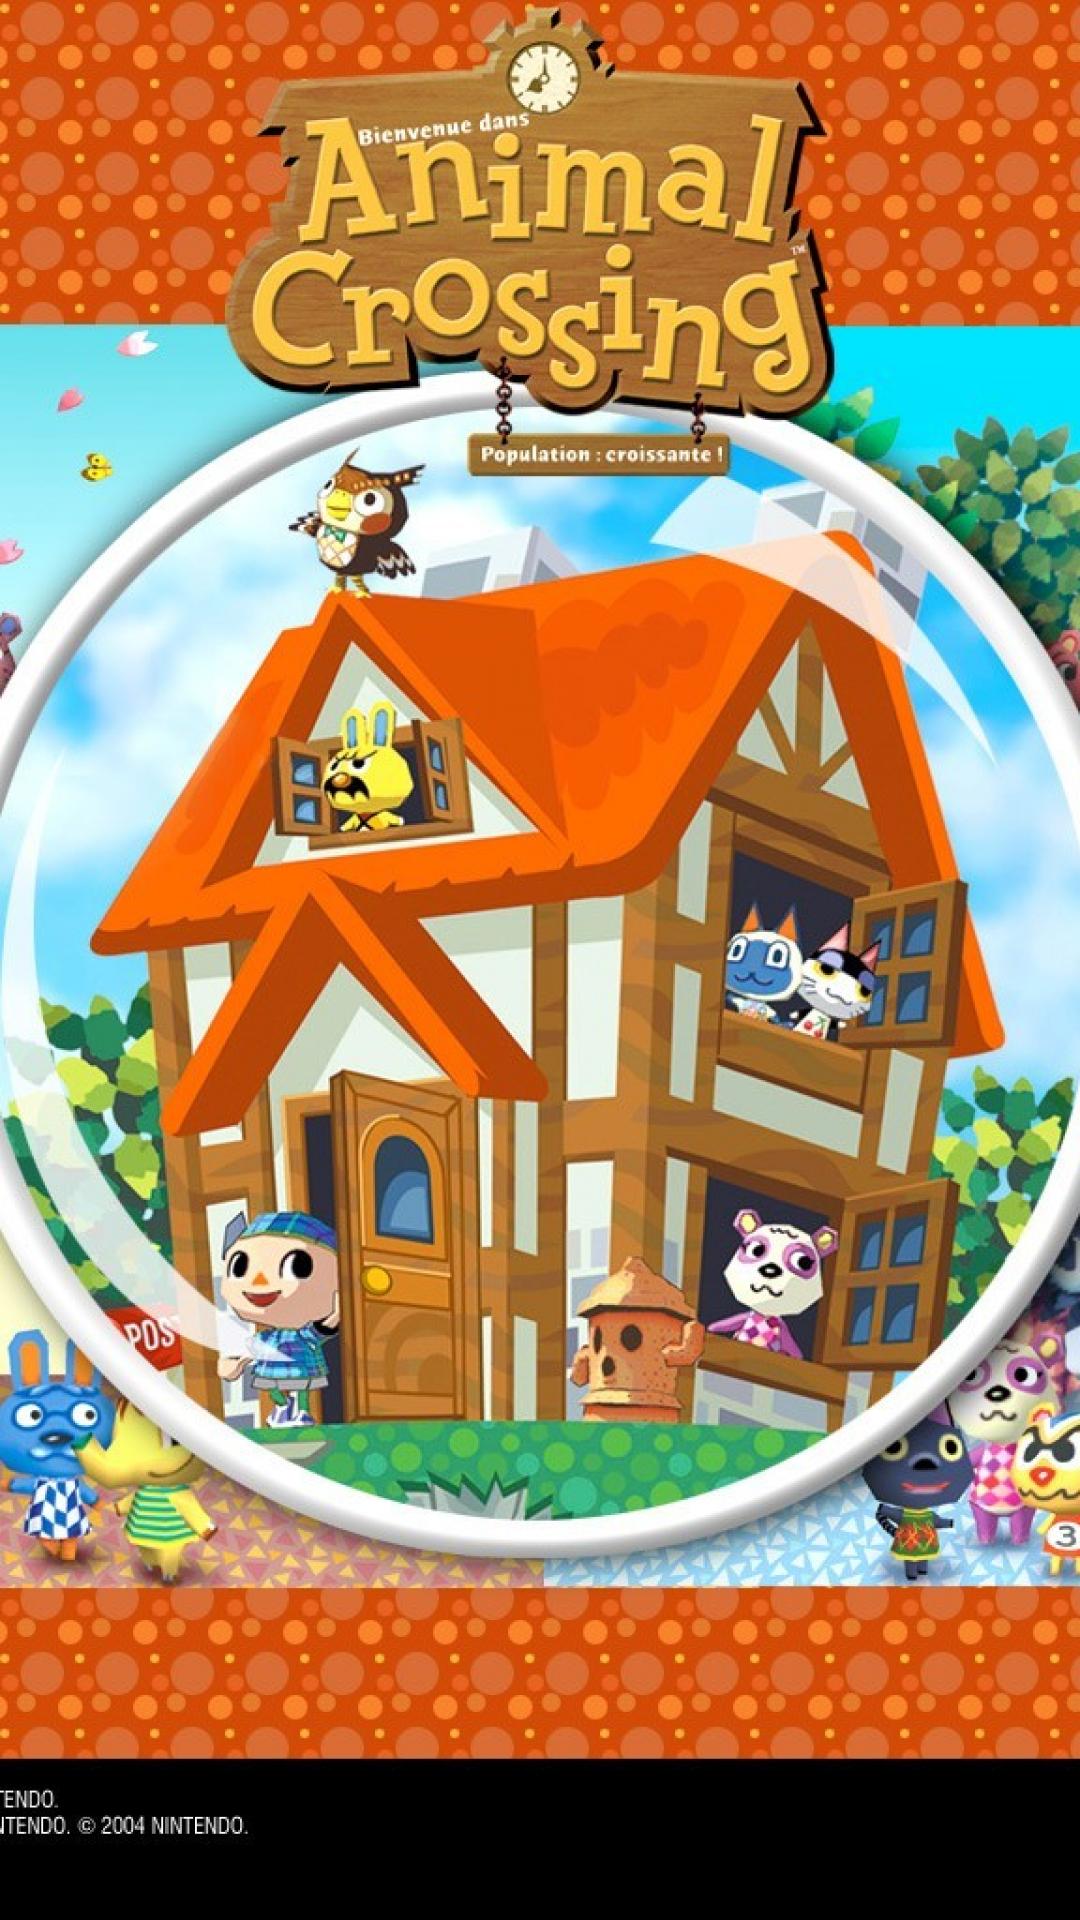 50+] Animal Crossing iPhone Wallpaper - WallpaperSafari